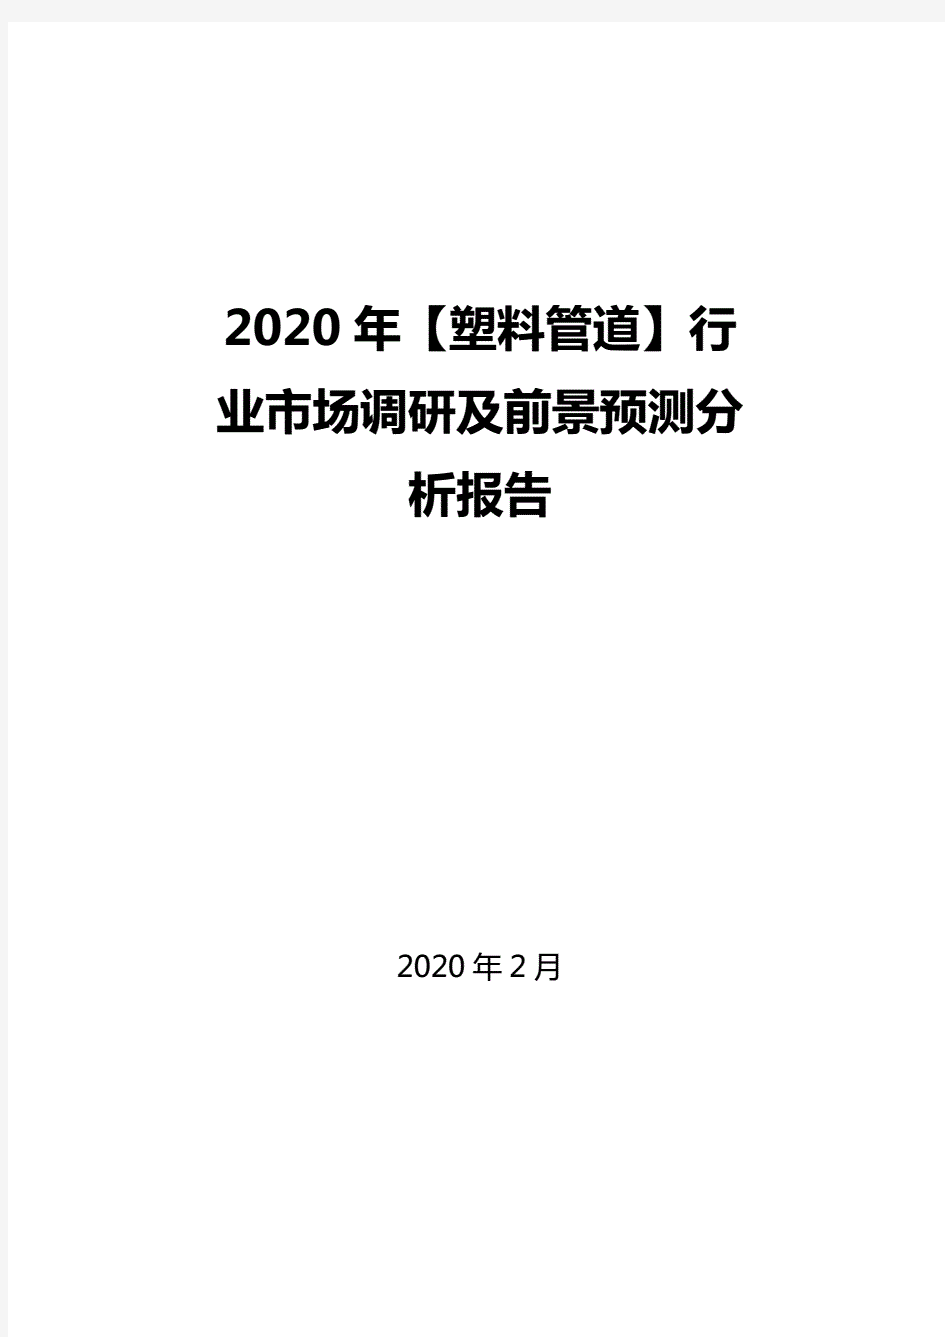 2020年【塑料管道】行业市场调研及前景预测分析报告.